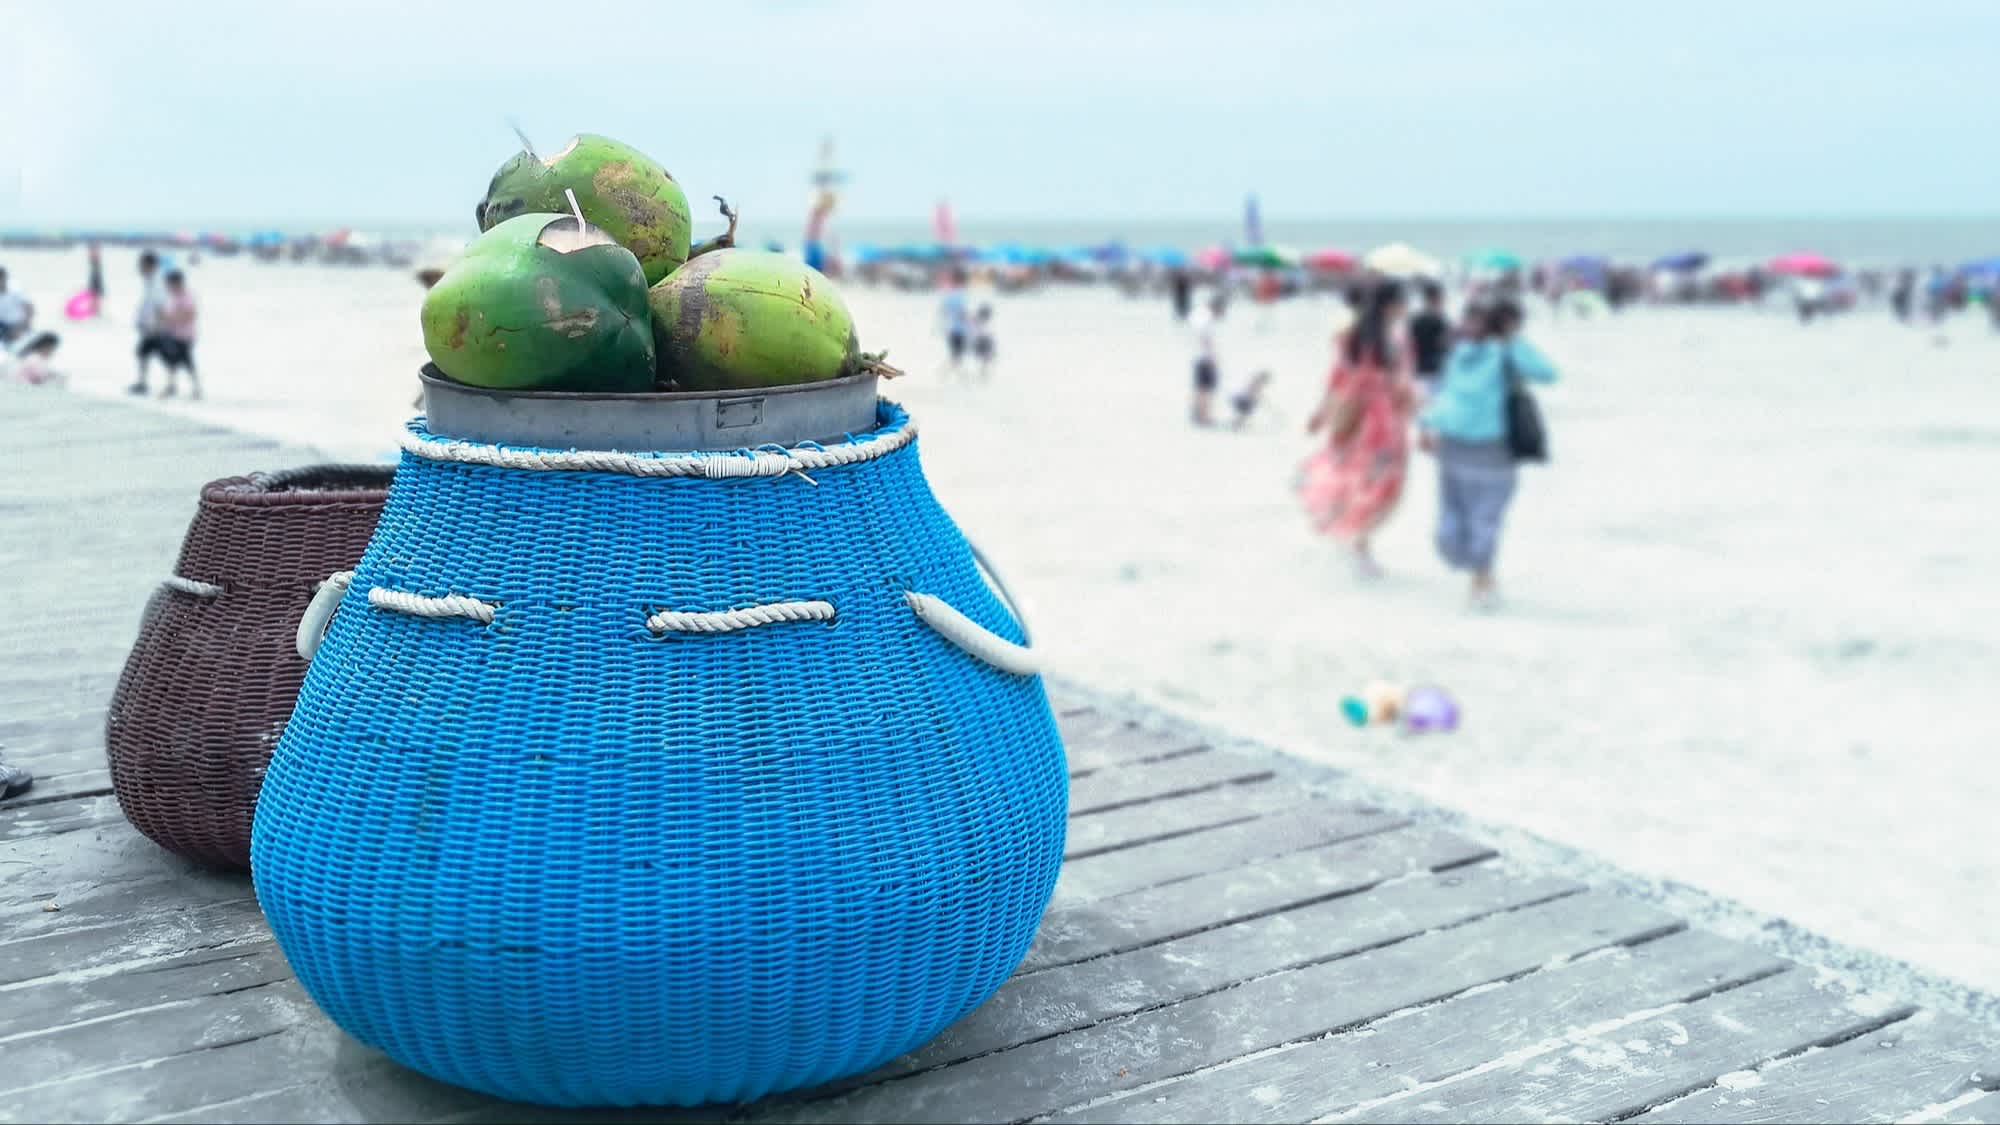 Paniers de noix de coco sur la plage d'argent à Beihai, Chine

